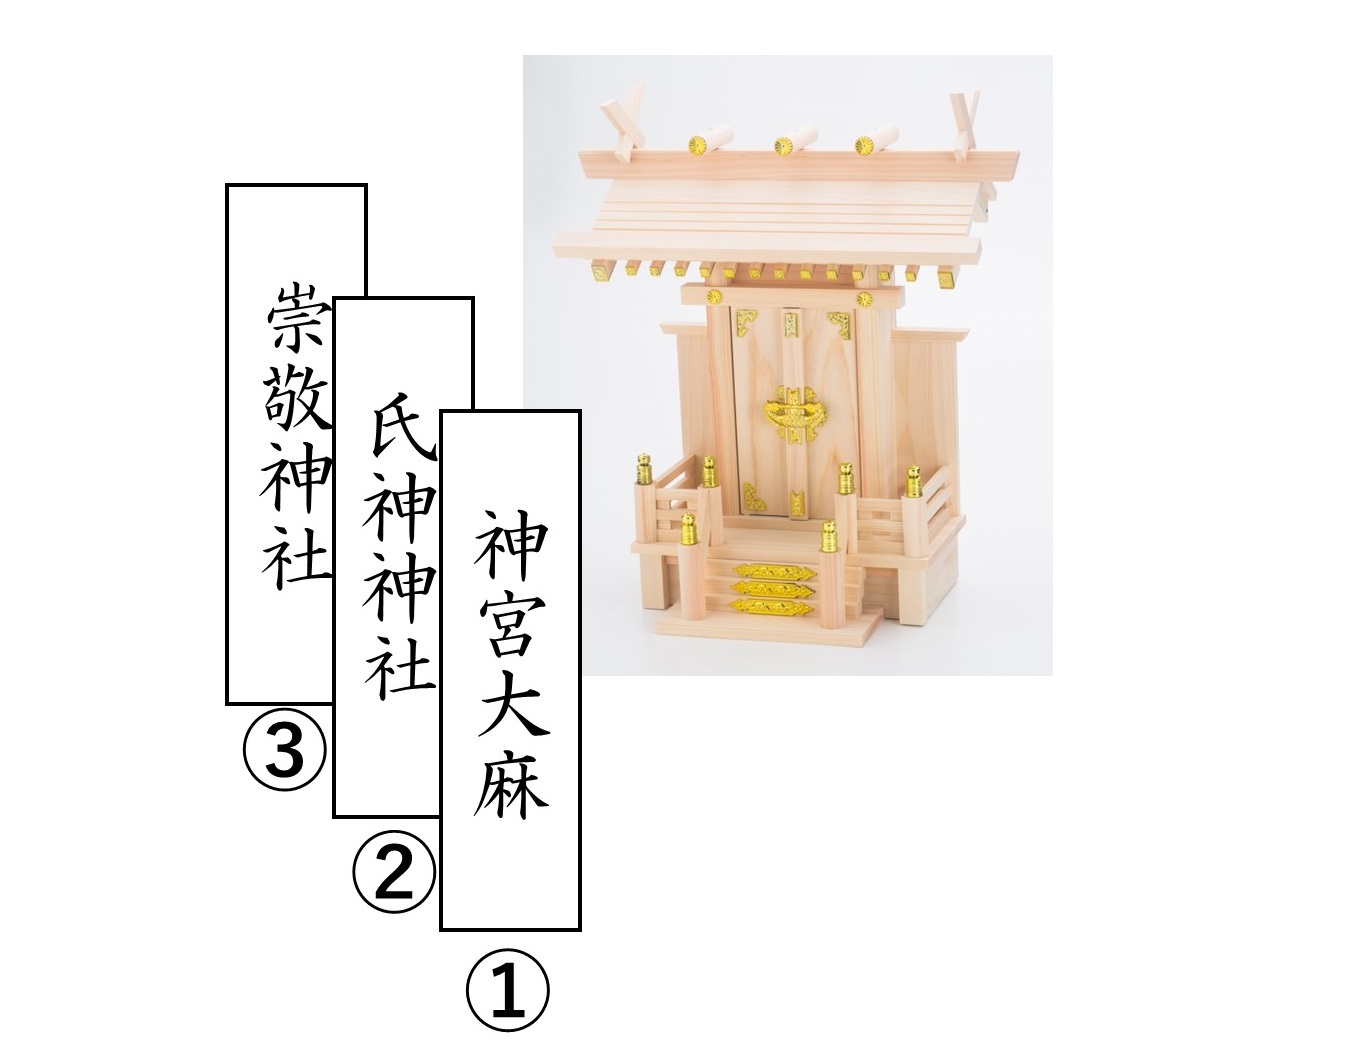 神棚の配置 向き 飾り方をわかりやすく解説 モダン神棚の選び方も紹介します ホトカミ